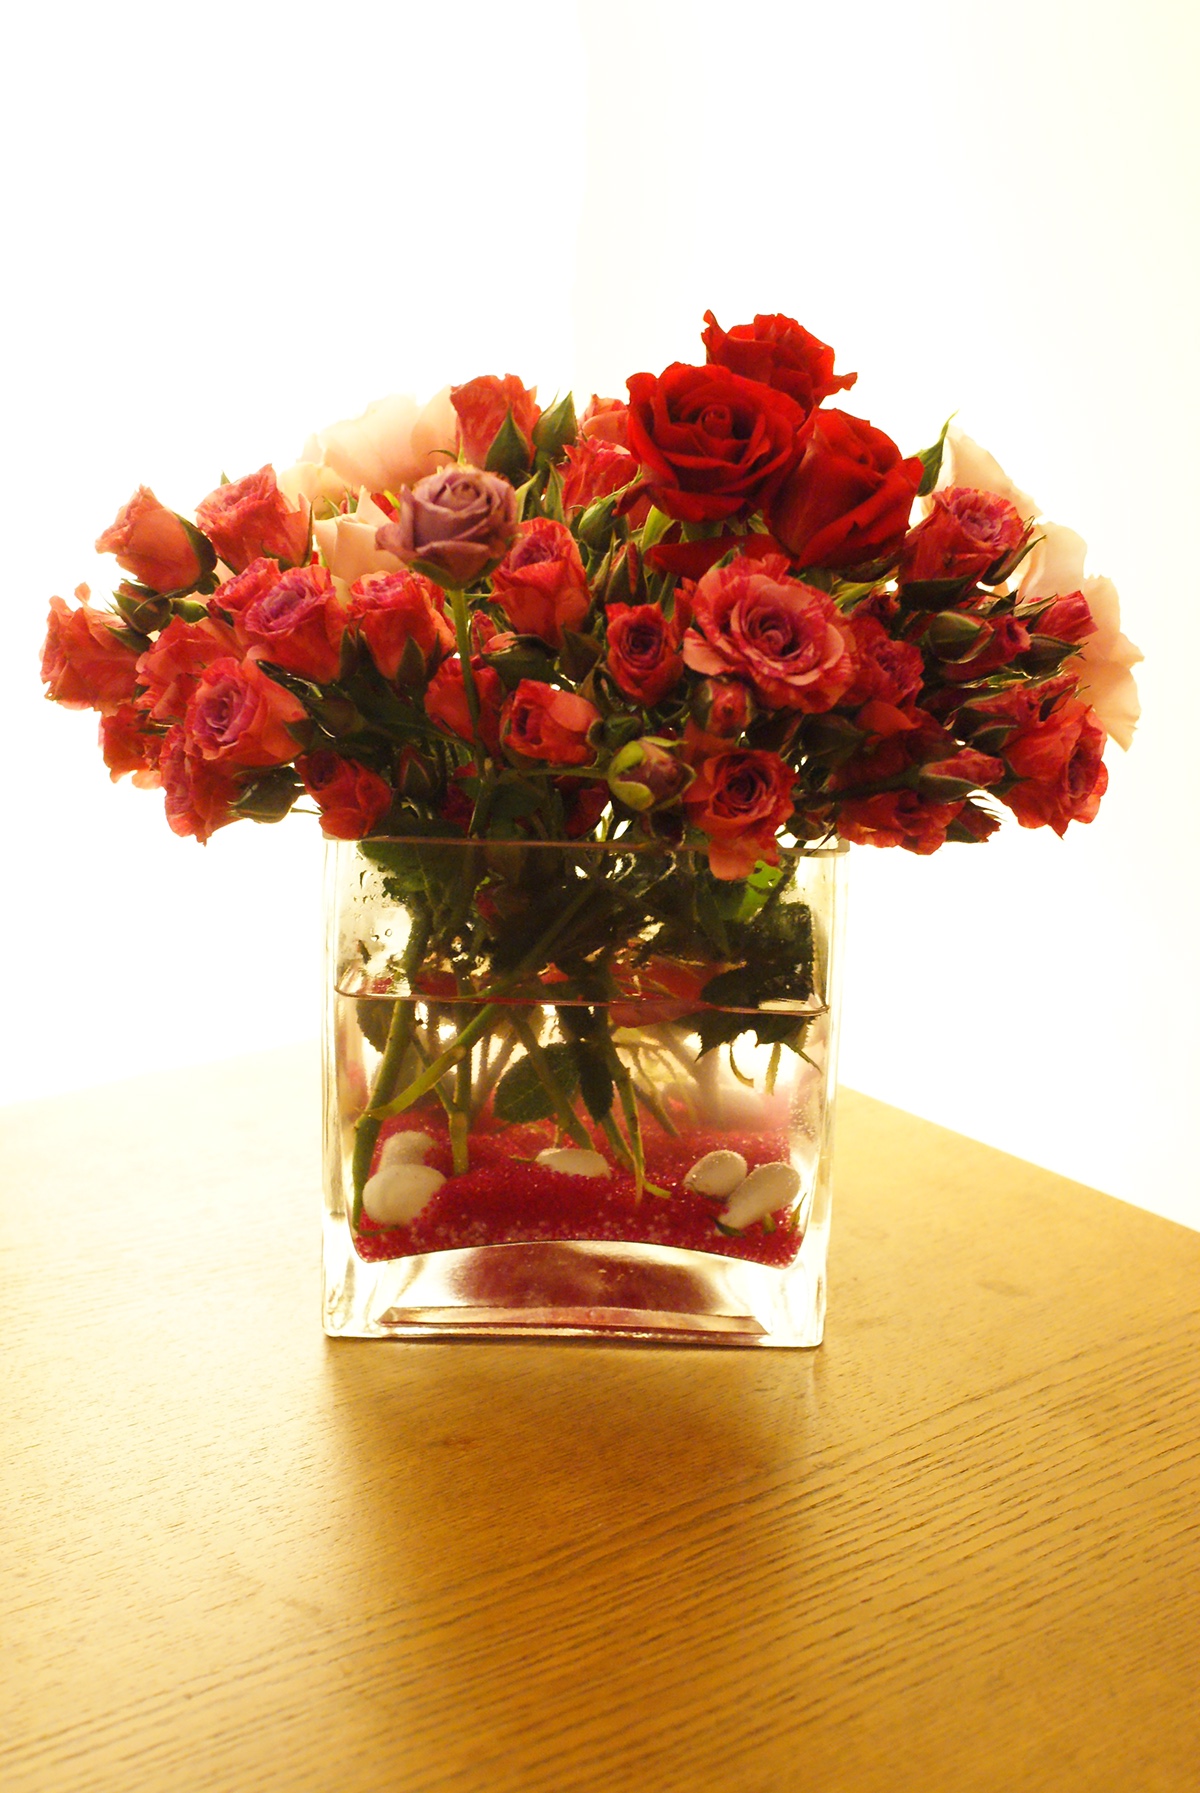 flower design arrangement Bouquet flower arrangement gifts pink pink rose red red rose rose spray roses Vase woman